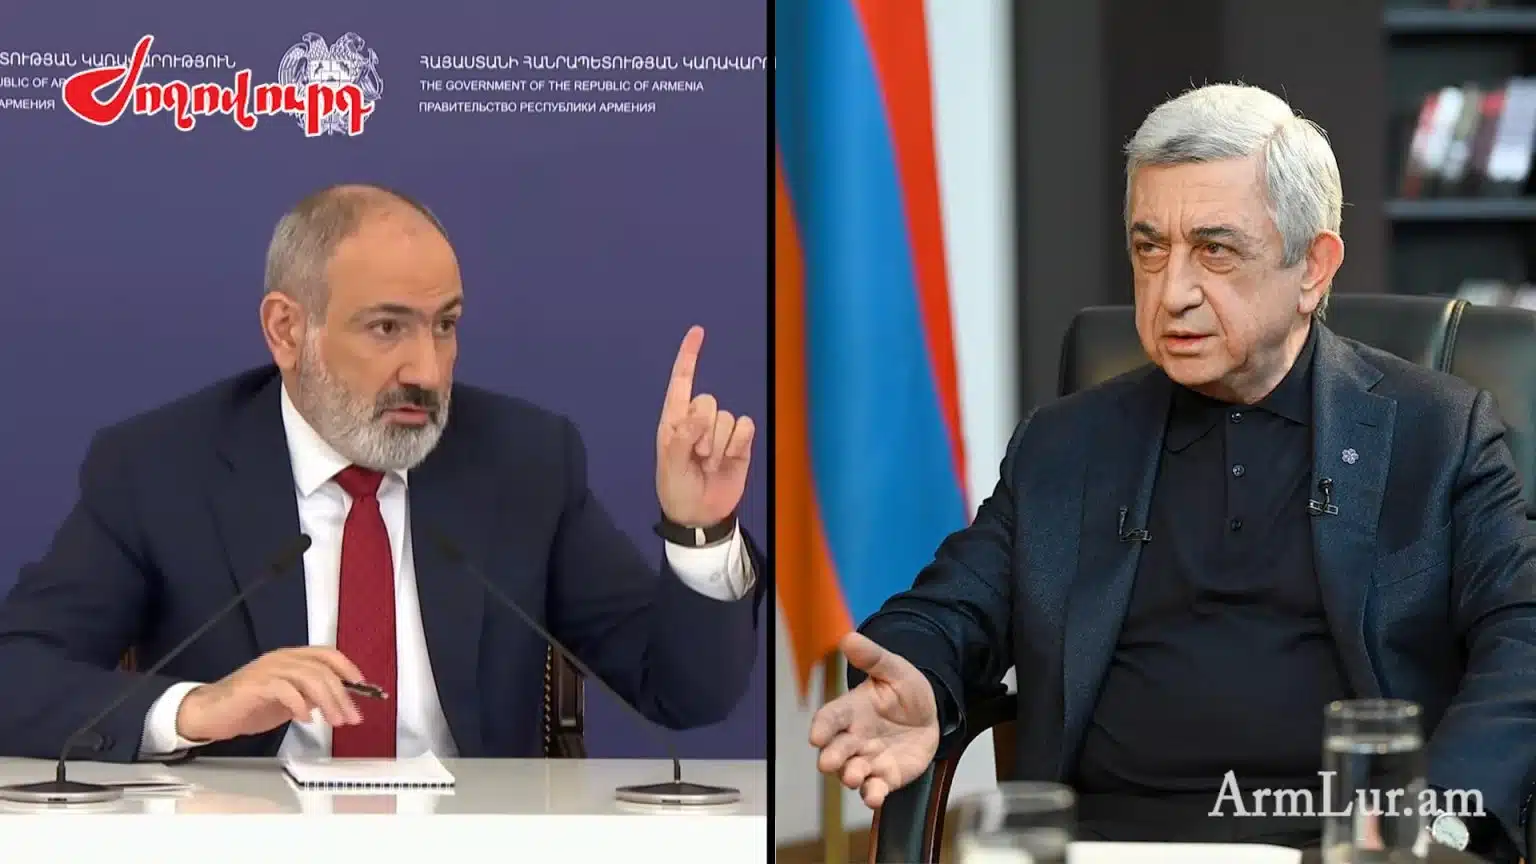 Սերժ Սարգսյանը հայտարարեց, 2018-ից Հայաստանը ռազմատեխնիկական օգնություն չի ստացել, ինչպե՞ս կմեկնաբանեք. հարց՝ Փաշինյանին